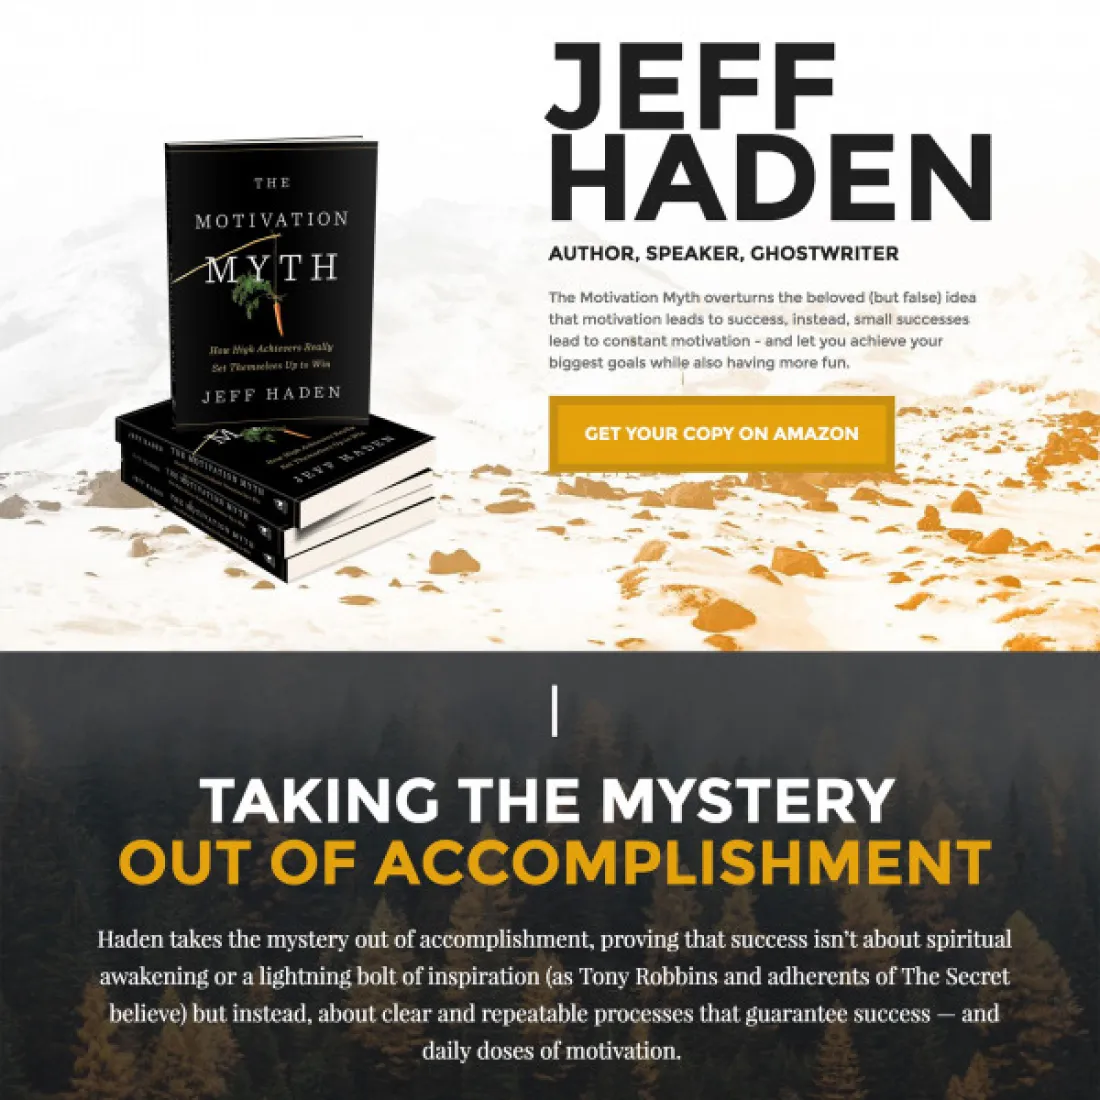 Image of website for Jeff Haden